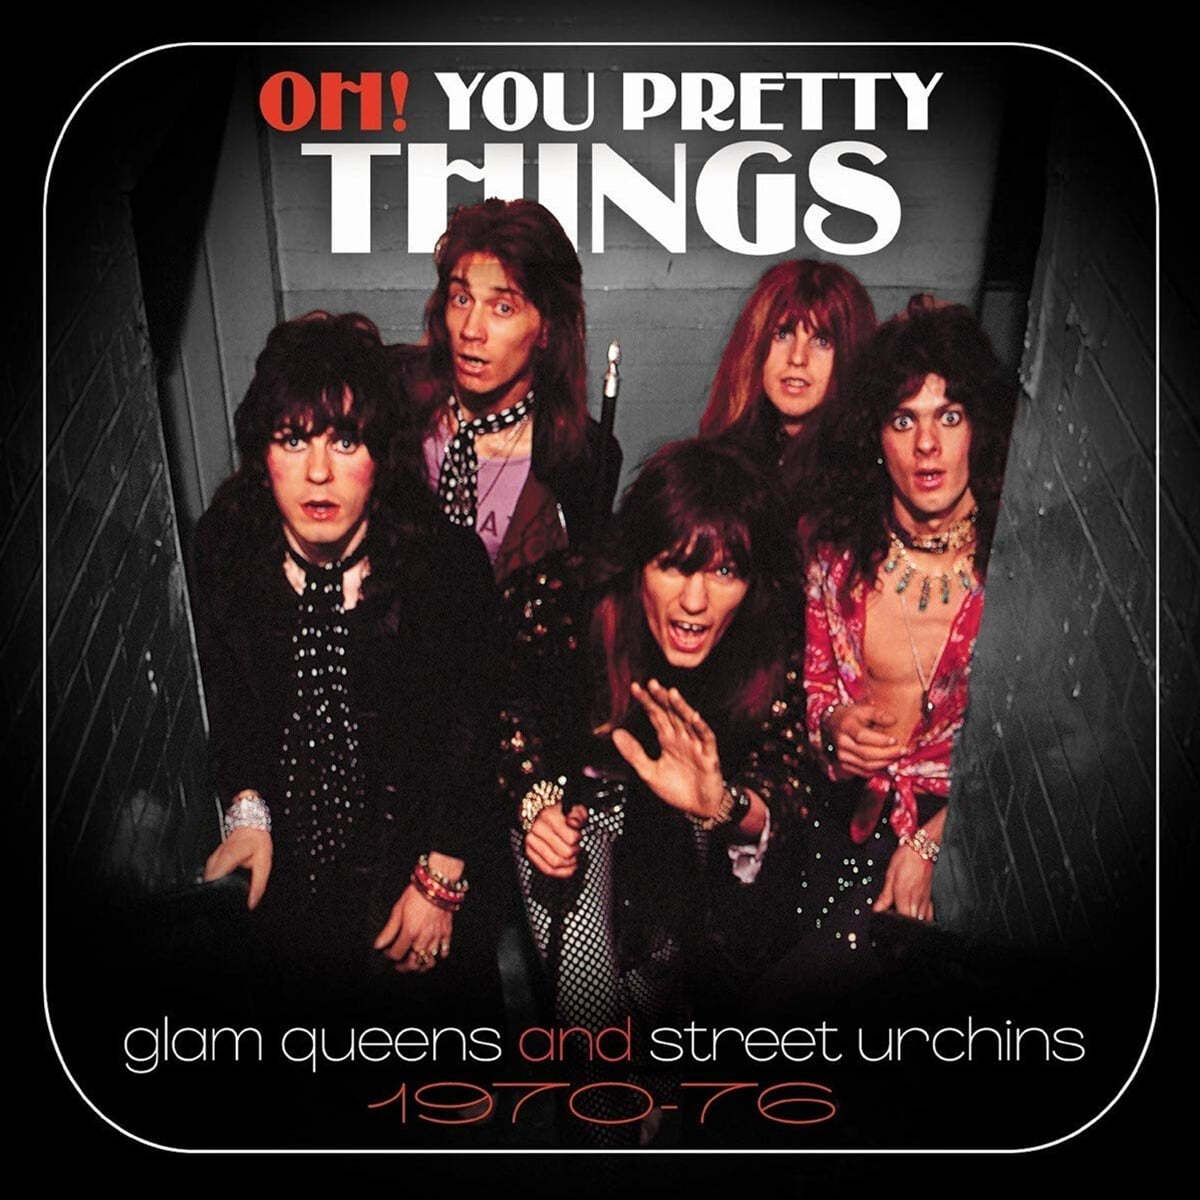 펑크, 하드 락 모음집 (Oh! You Pretty Things : Glam Queens And Street Urchins 1970-76)) 